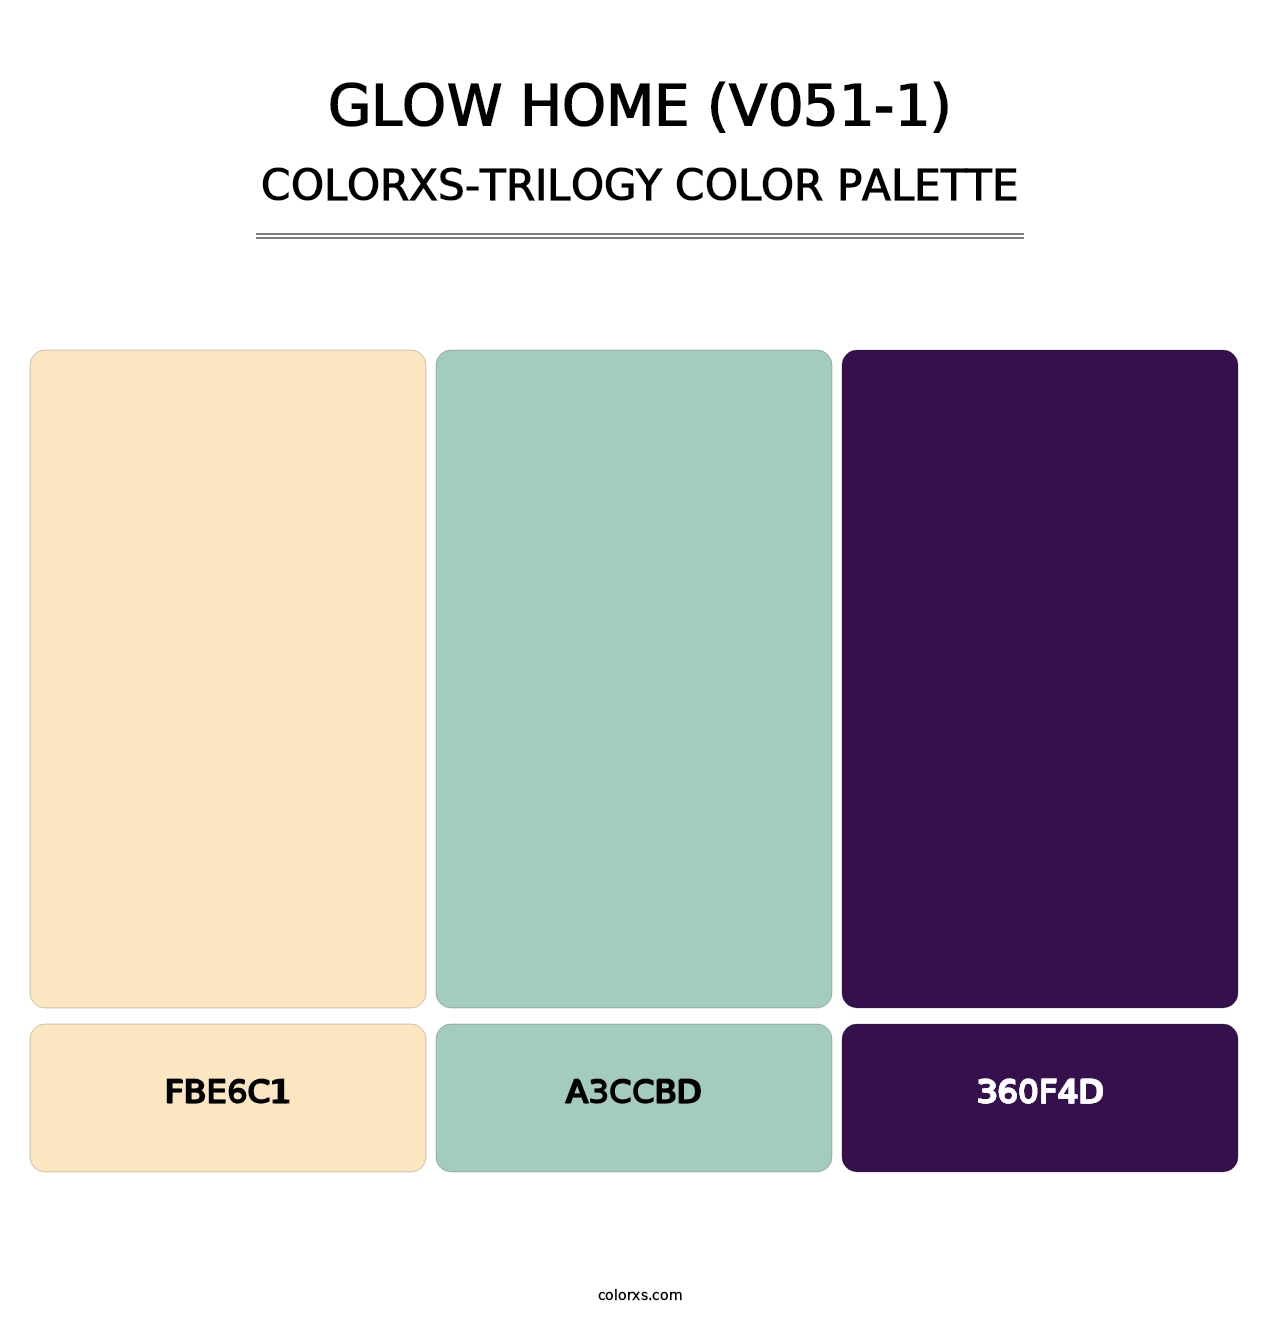 Glow Home (V051-1) - Colorxs Trilogy Palette